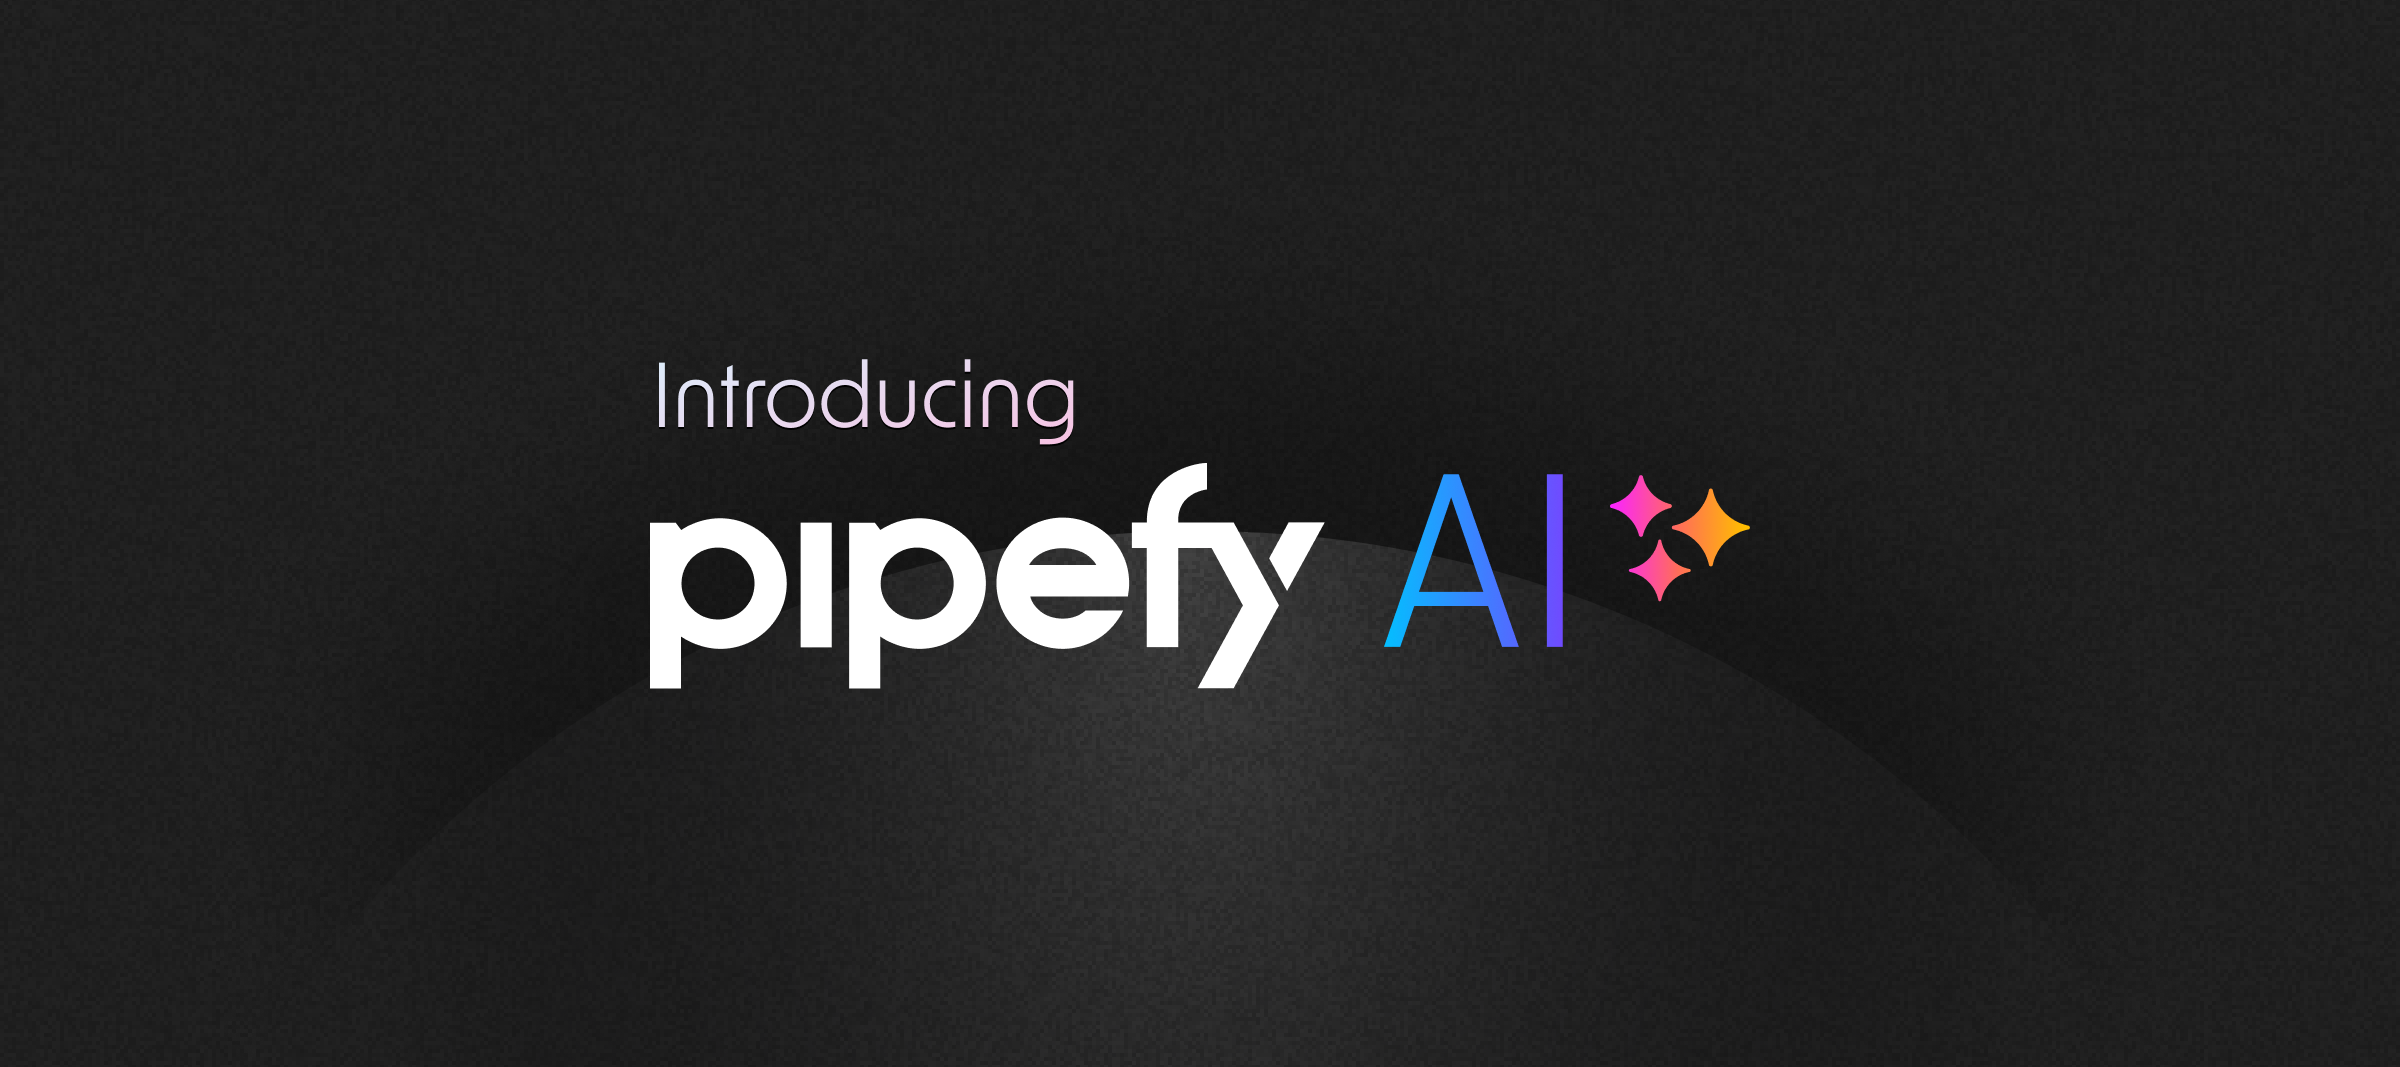 Construa seus processos com a IA do Pipefy: Crie novos pipes do zero em minutos com o Pipefy AI